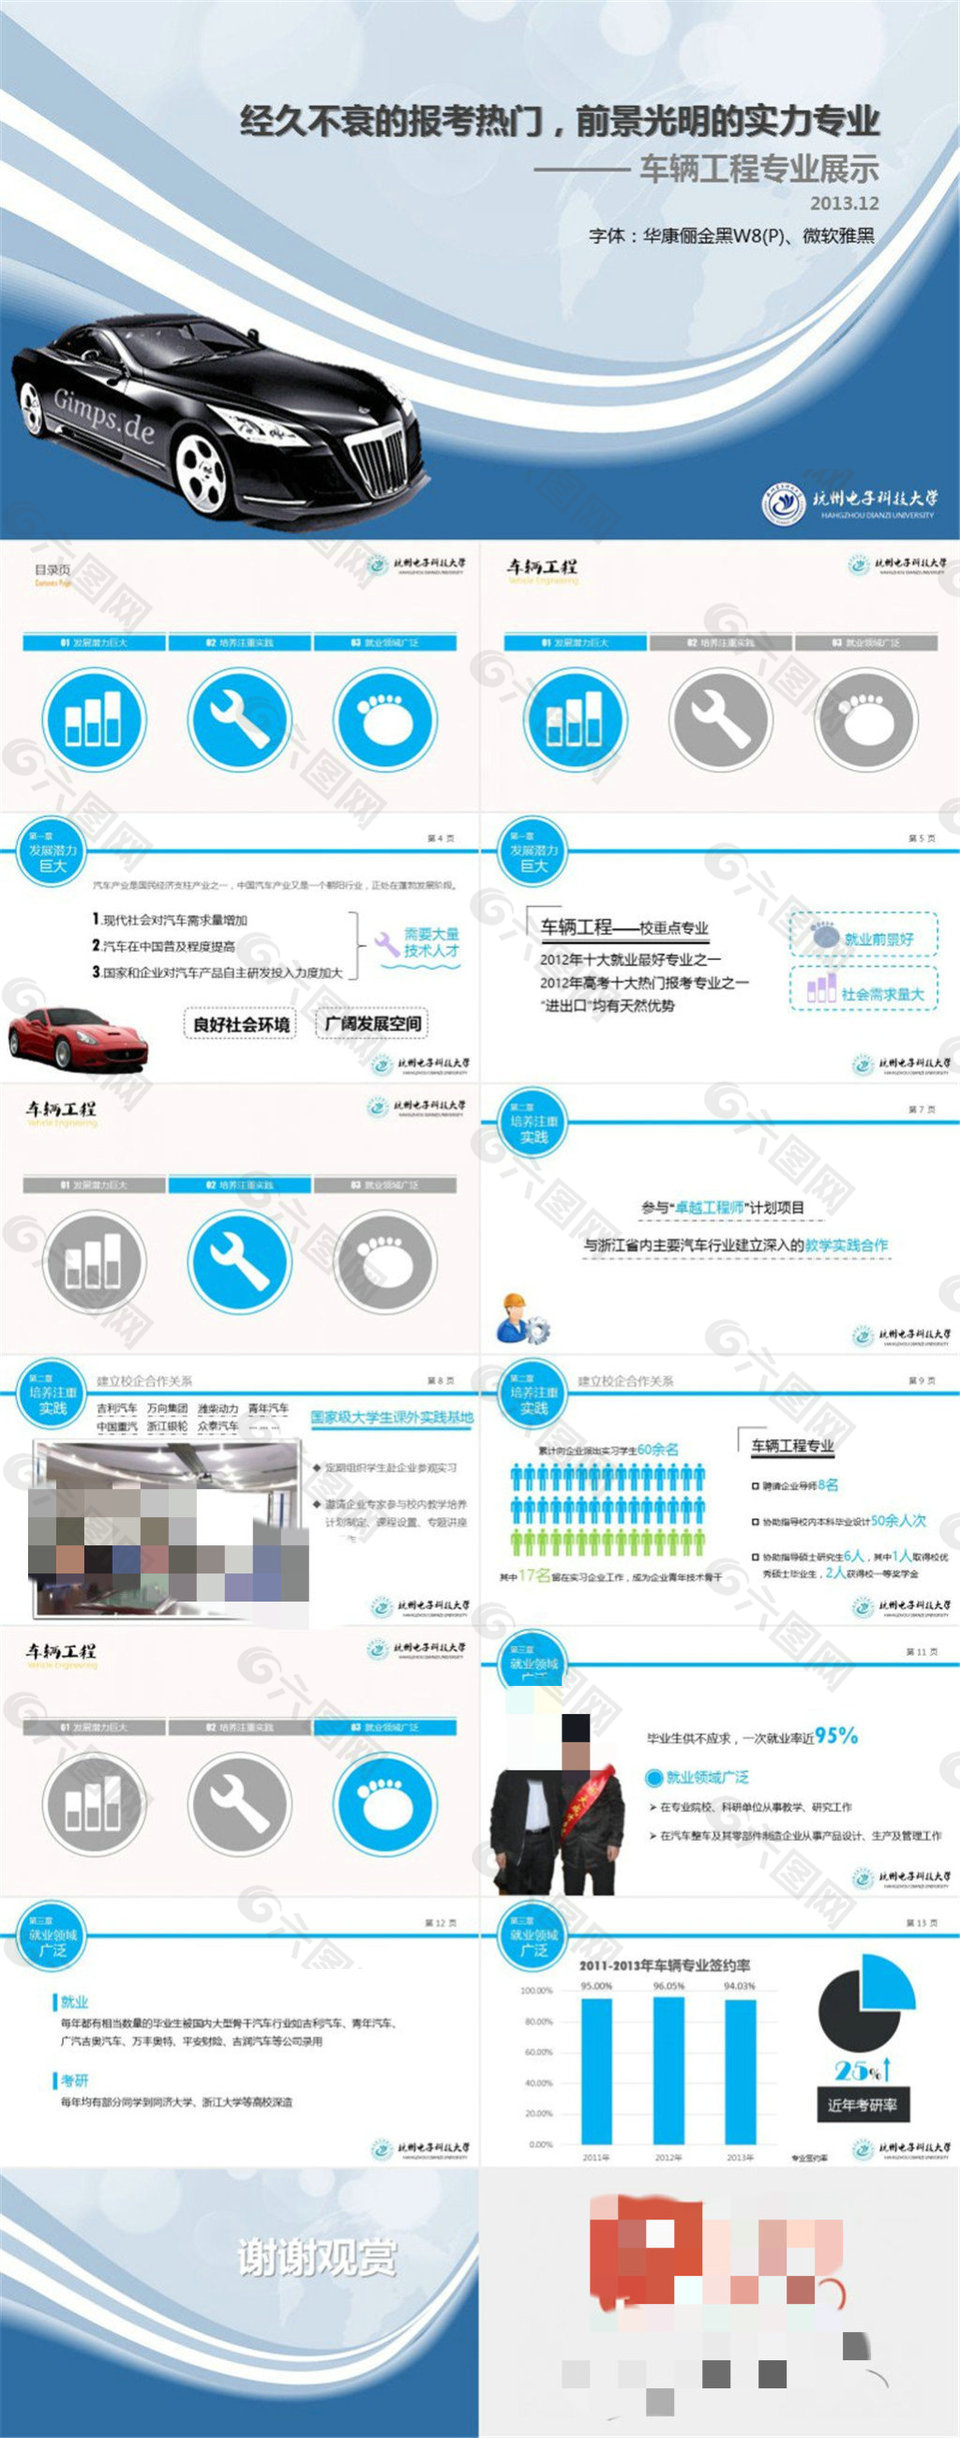 车辆工程专业未来发展与就业情况介绍ppt模板